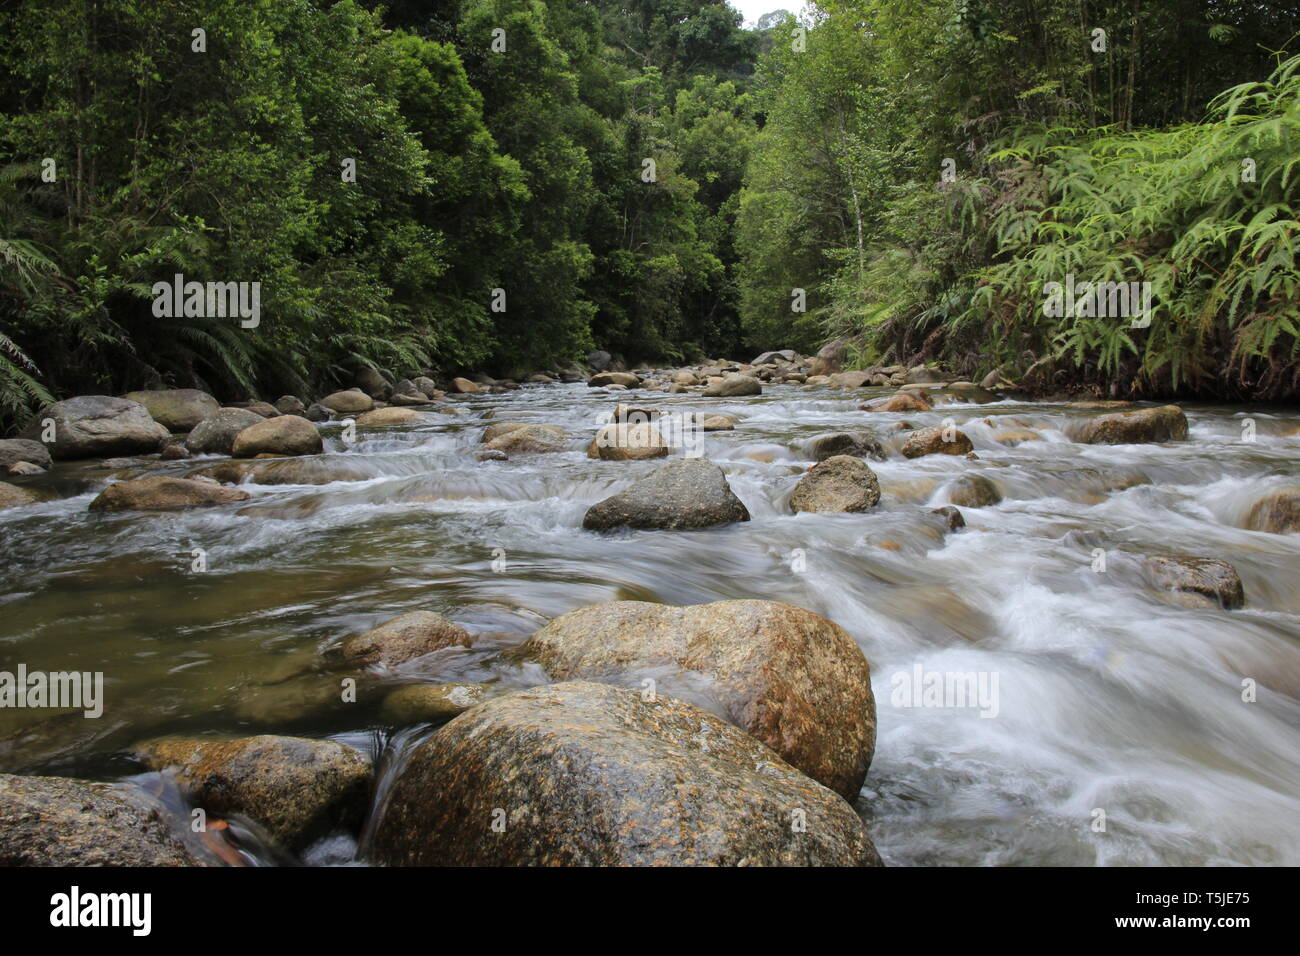 Sungai Chiling Fish Sanctuary, Kuala Kubu, Selangor, Malaysia Stock Photo